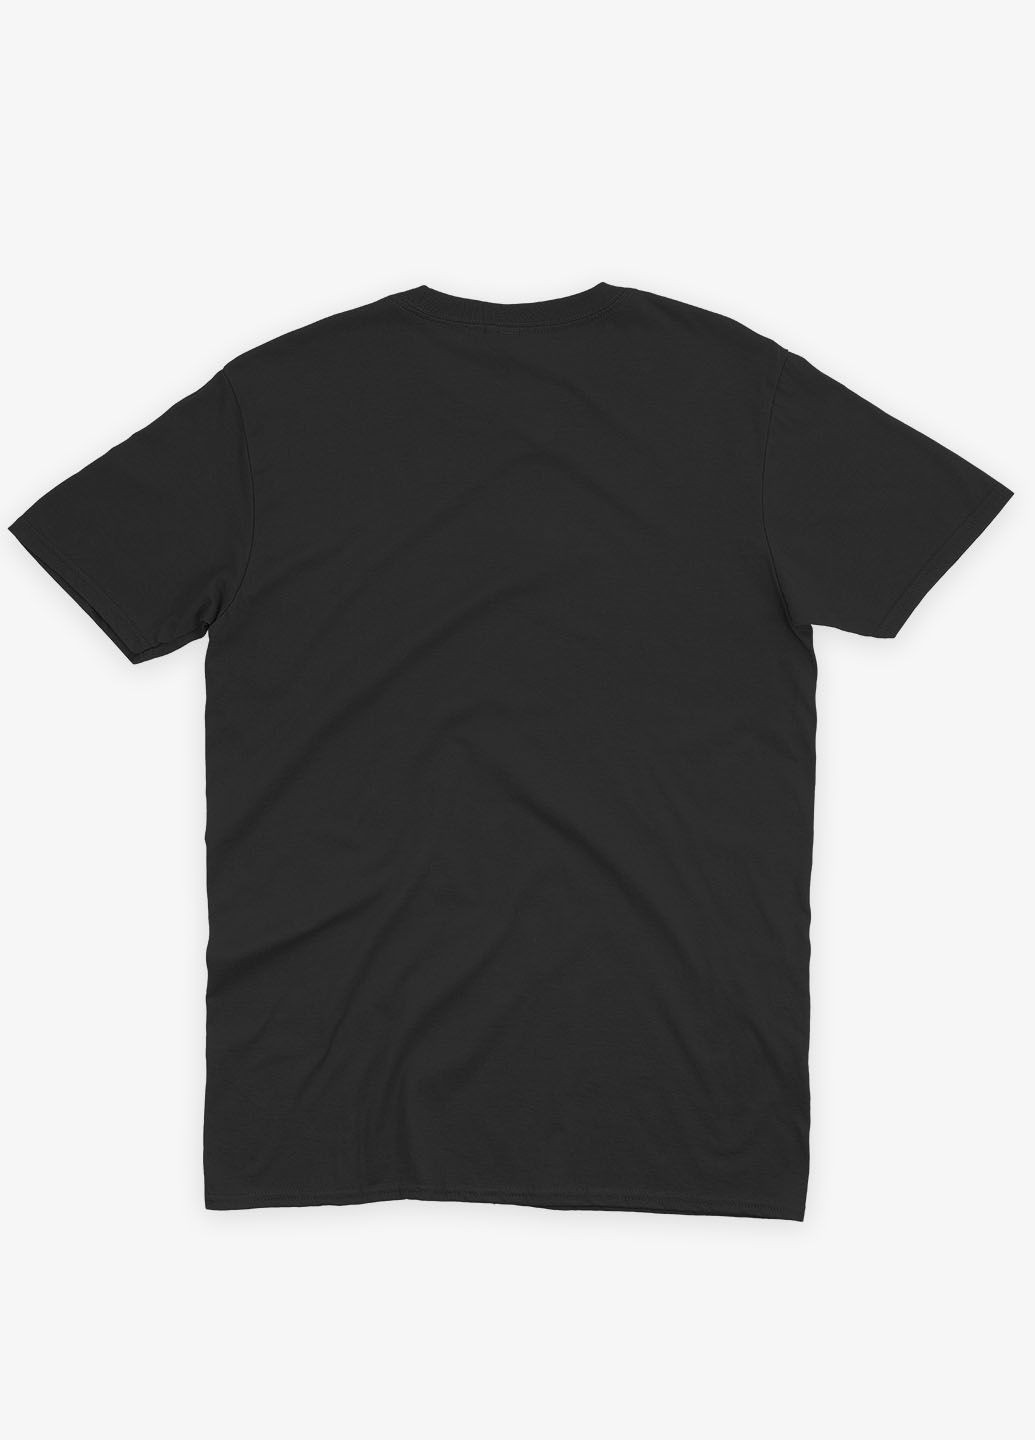 Черная демисезонная футболка для мальчика с принтом супергероя - человек-паук (ts001-1-bl-006-014-031-b) Modno